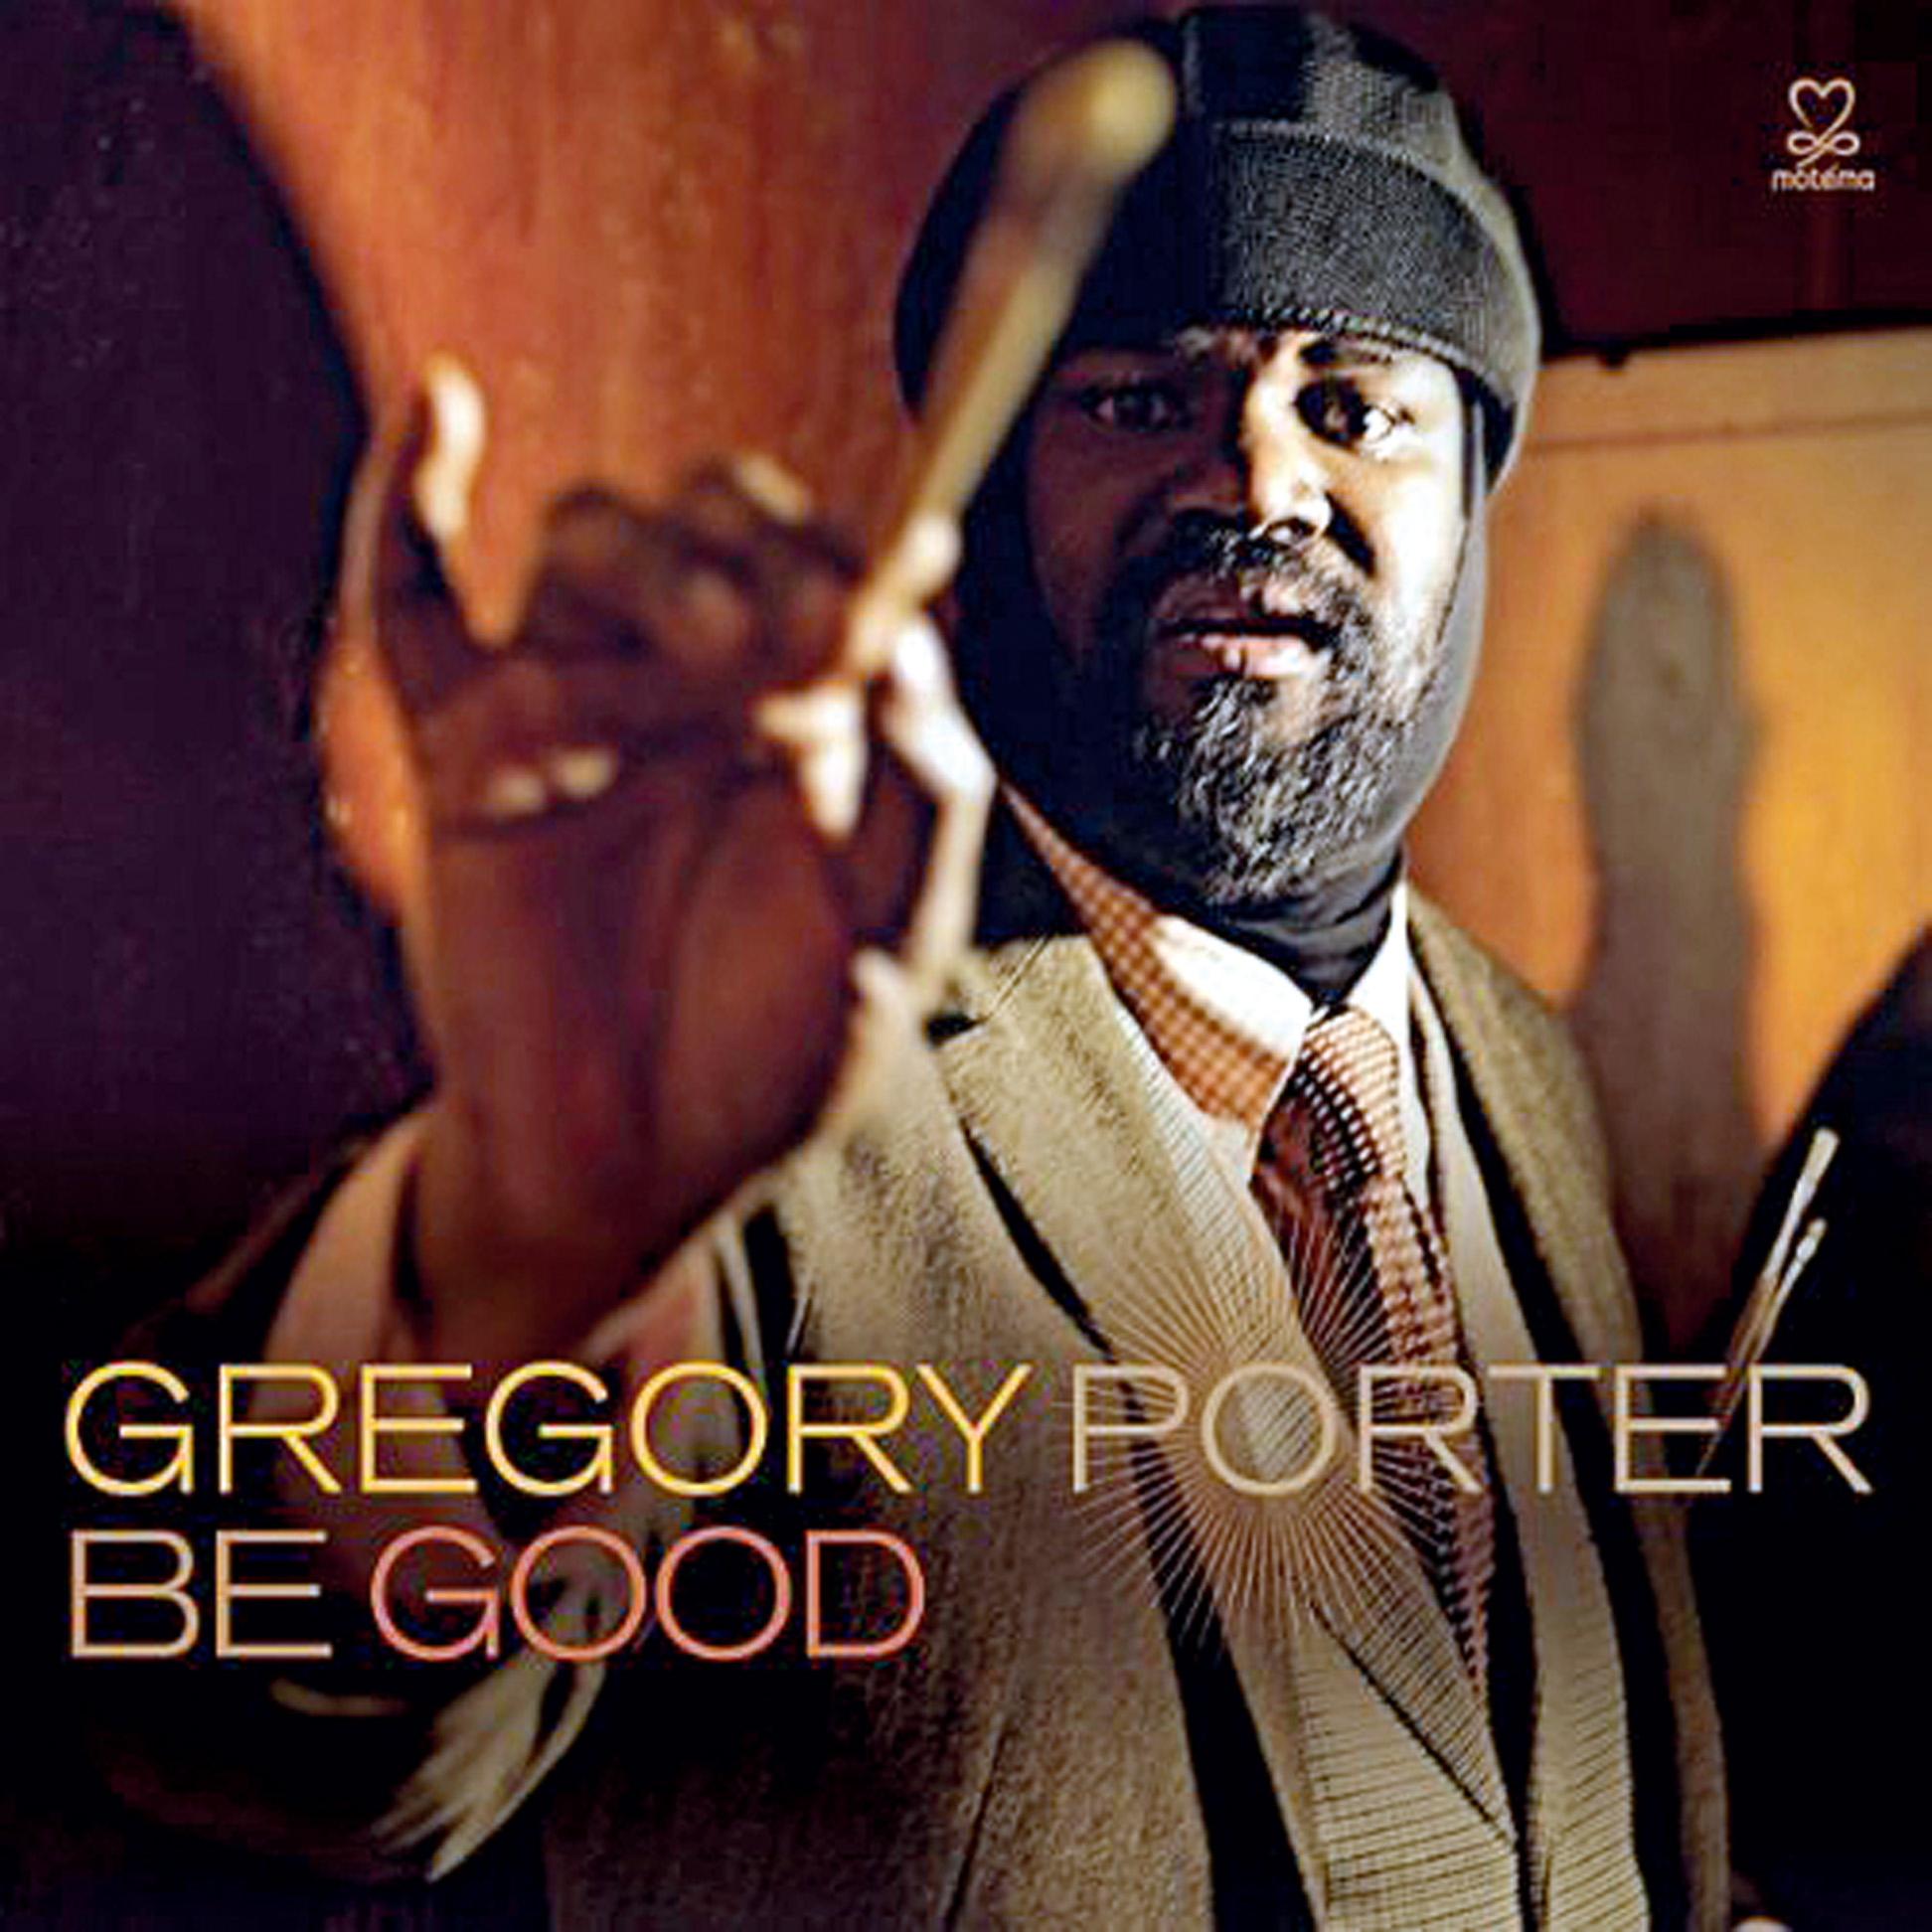 Música - Be Good: Gregory Porter faz a mais perfeita fusão de jazz e soul dos últimos anos. Uma boa dinâmica deixa a música muito melhor. (Regis Salvarani, Eldorado FM)